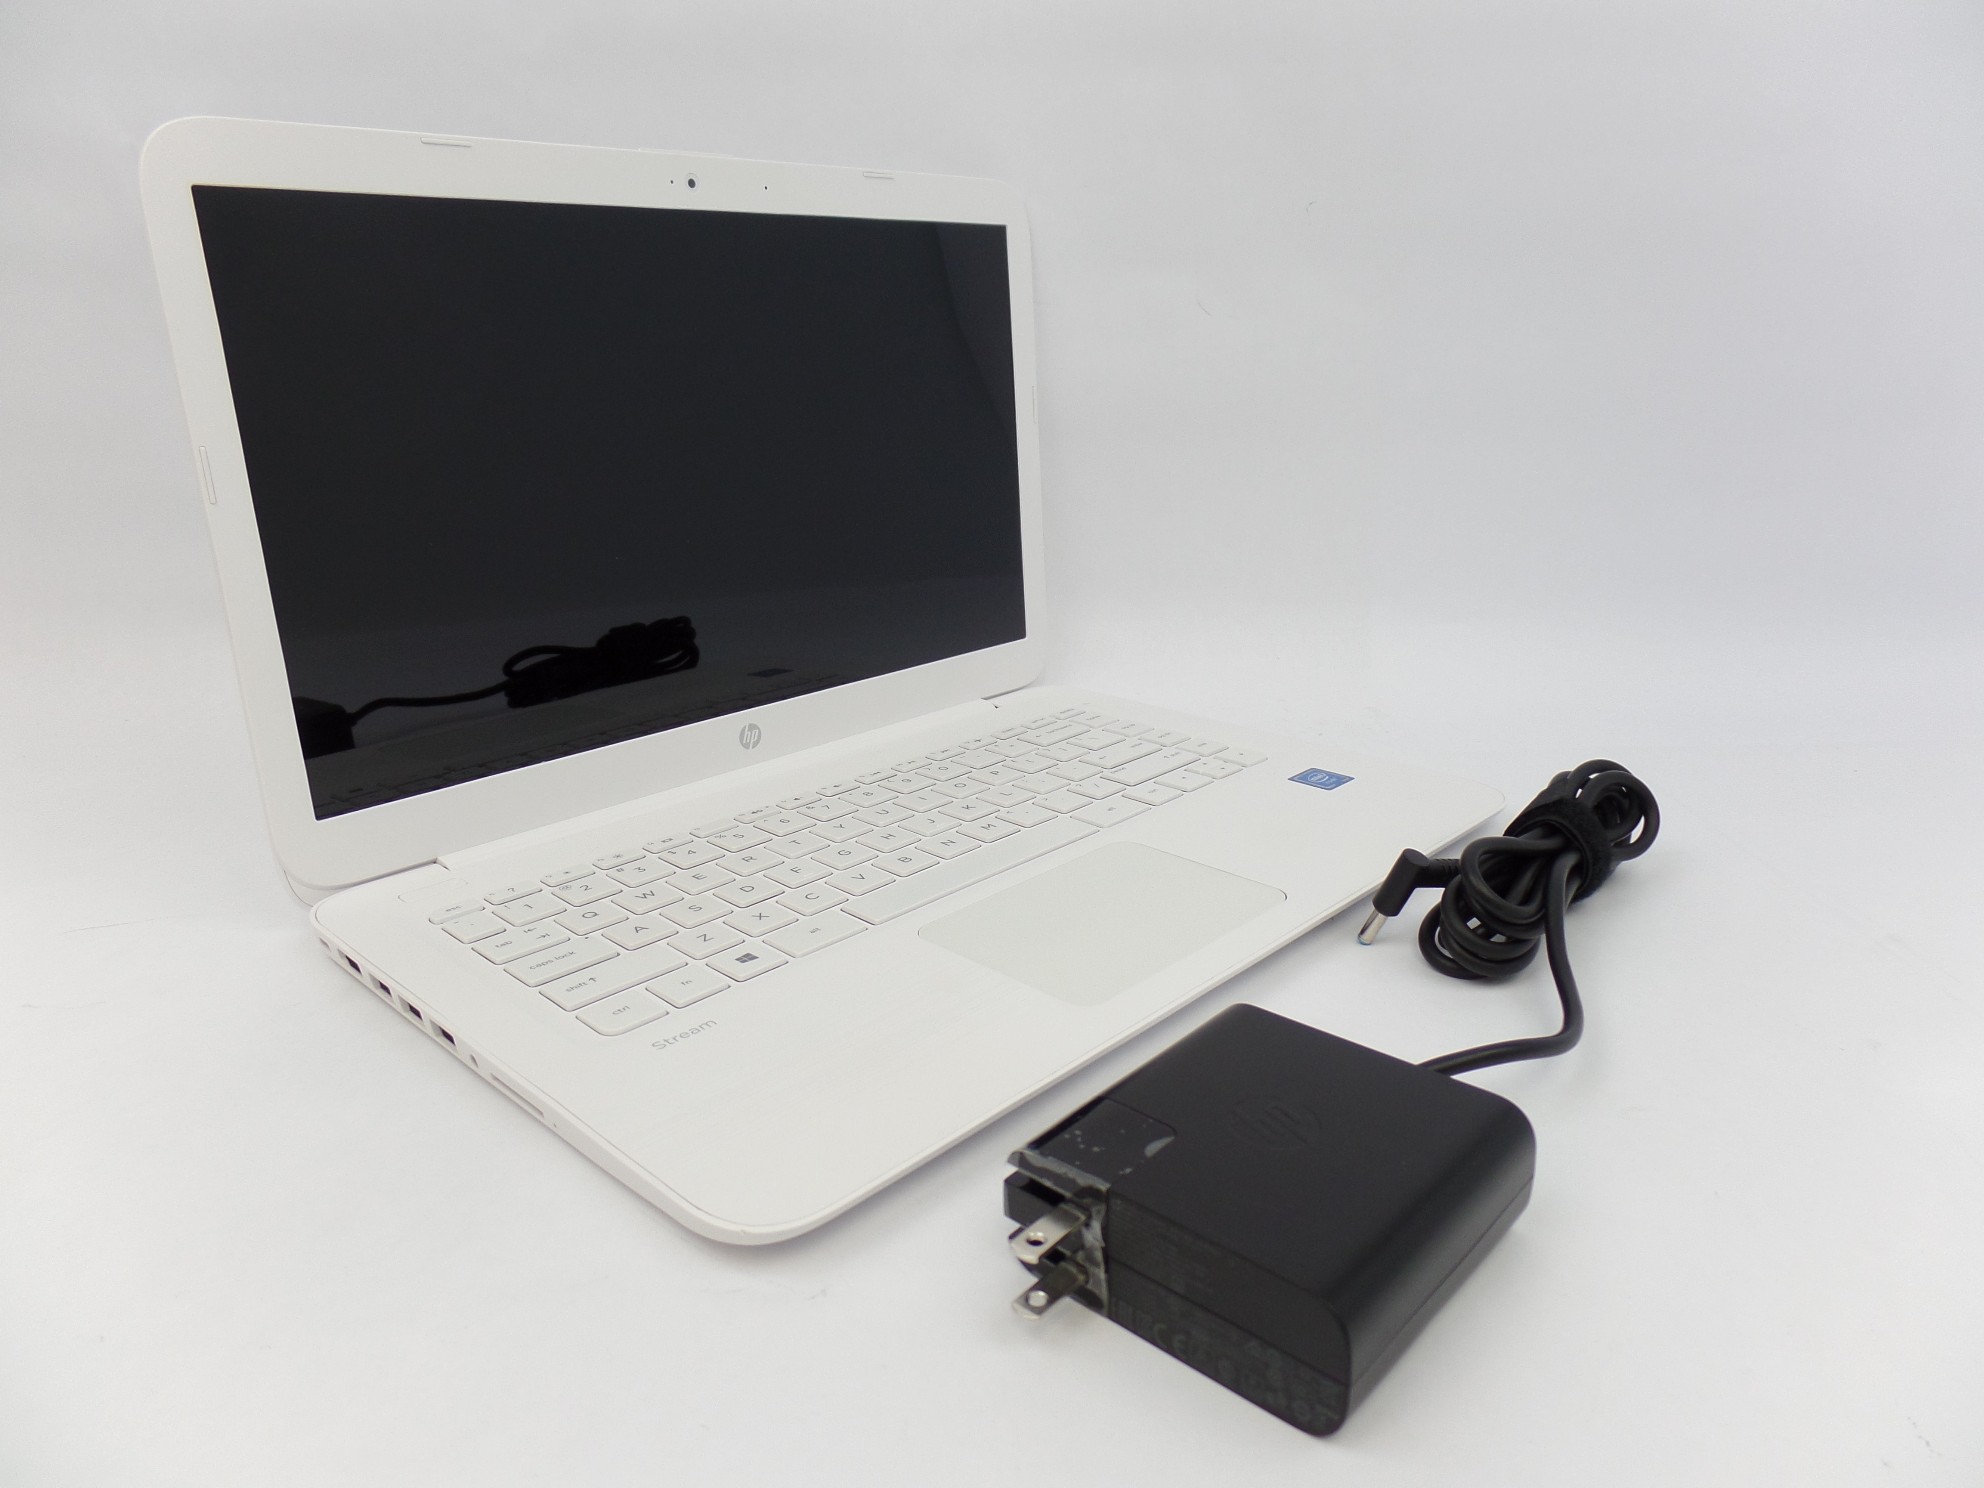 HP Stream 14-cb163ms 14" FHD Celeron N3060 1.6GHz 4GB 64GB W10H Laptop 5LN06UA S